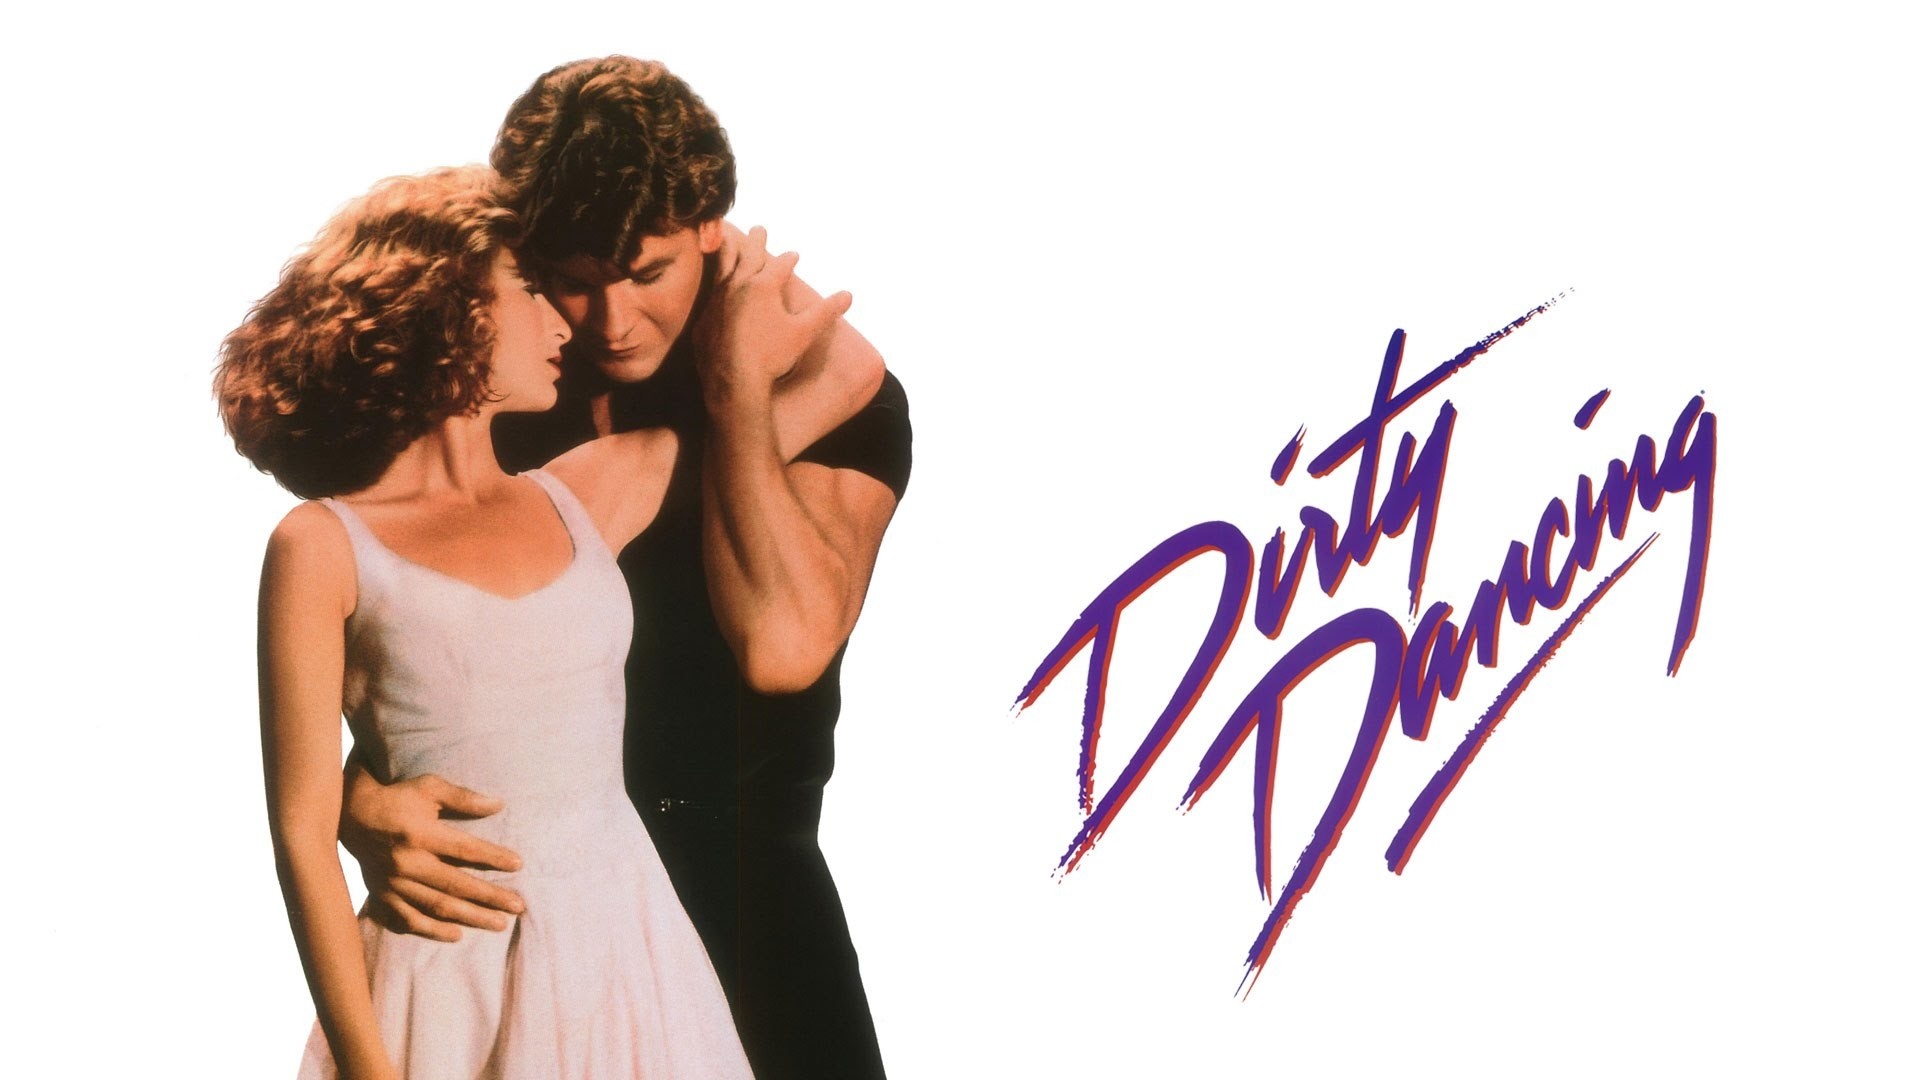 Dirty Dancing, Desktop wallpaper, 57 images, Movie memorabilia, 1920x1080 Full HD Desktop